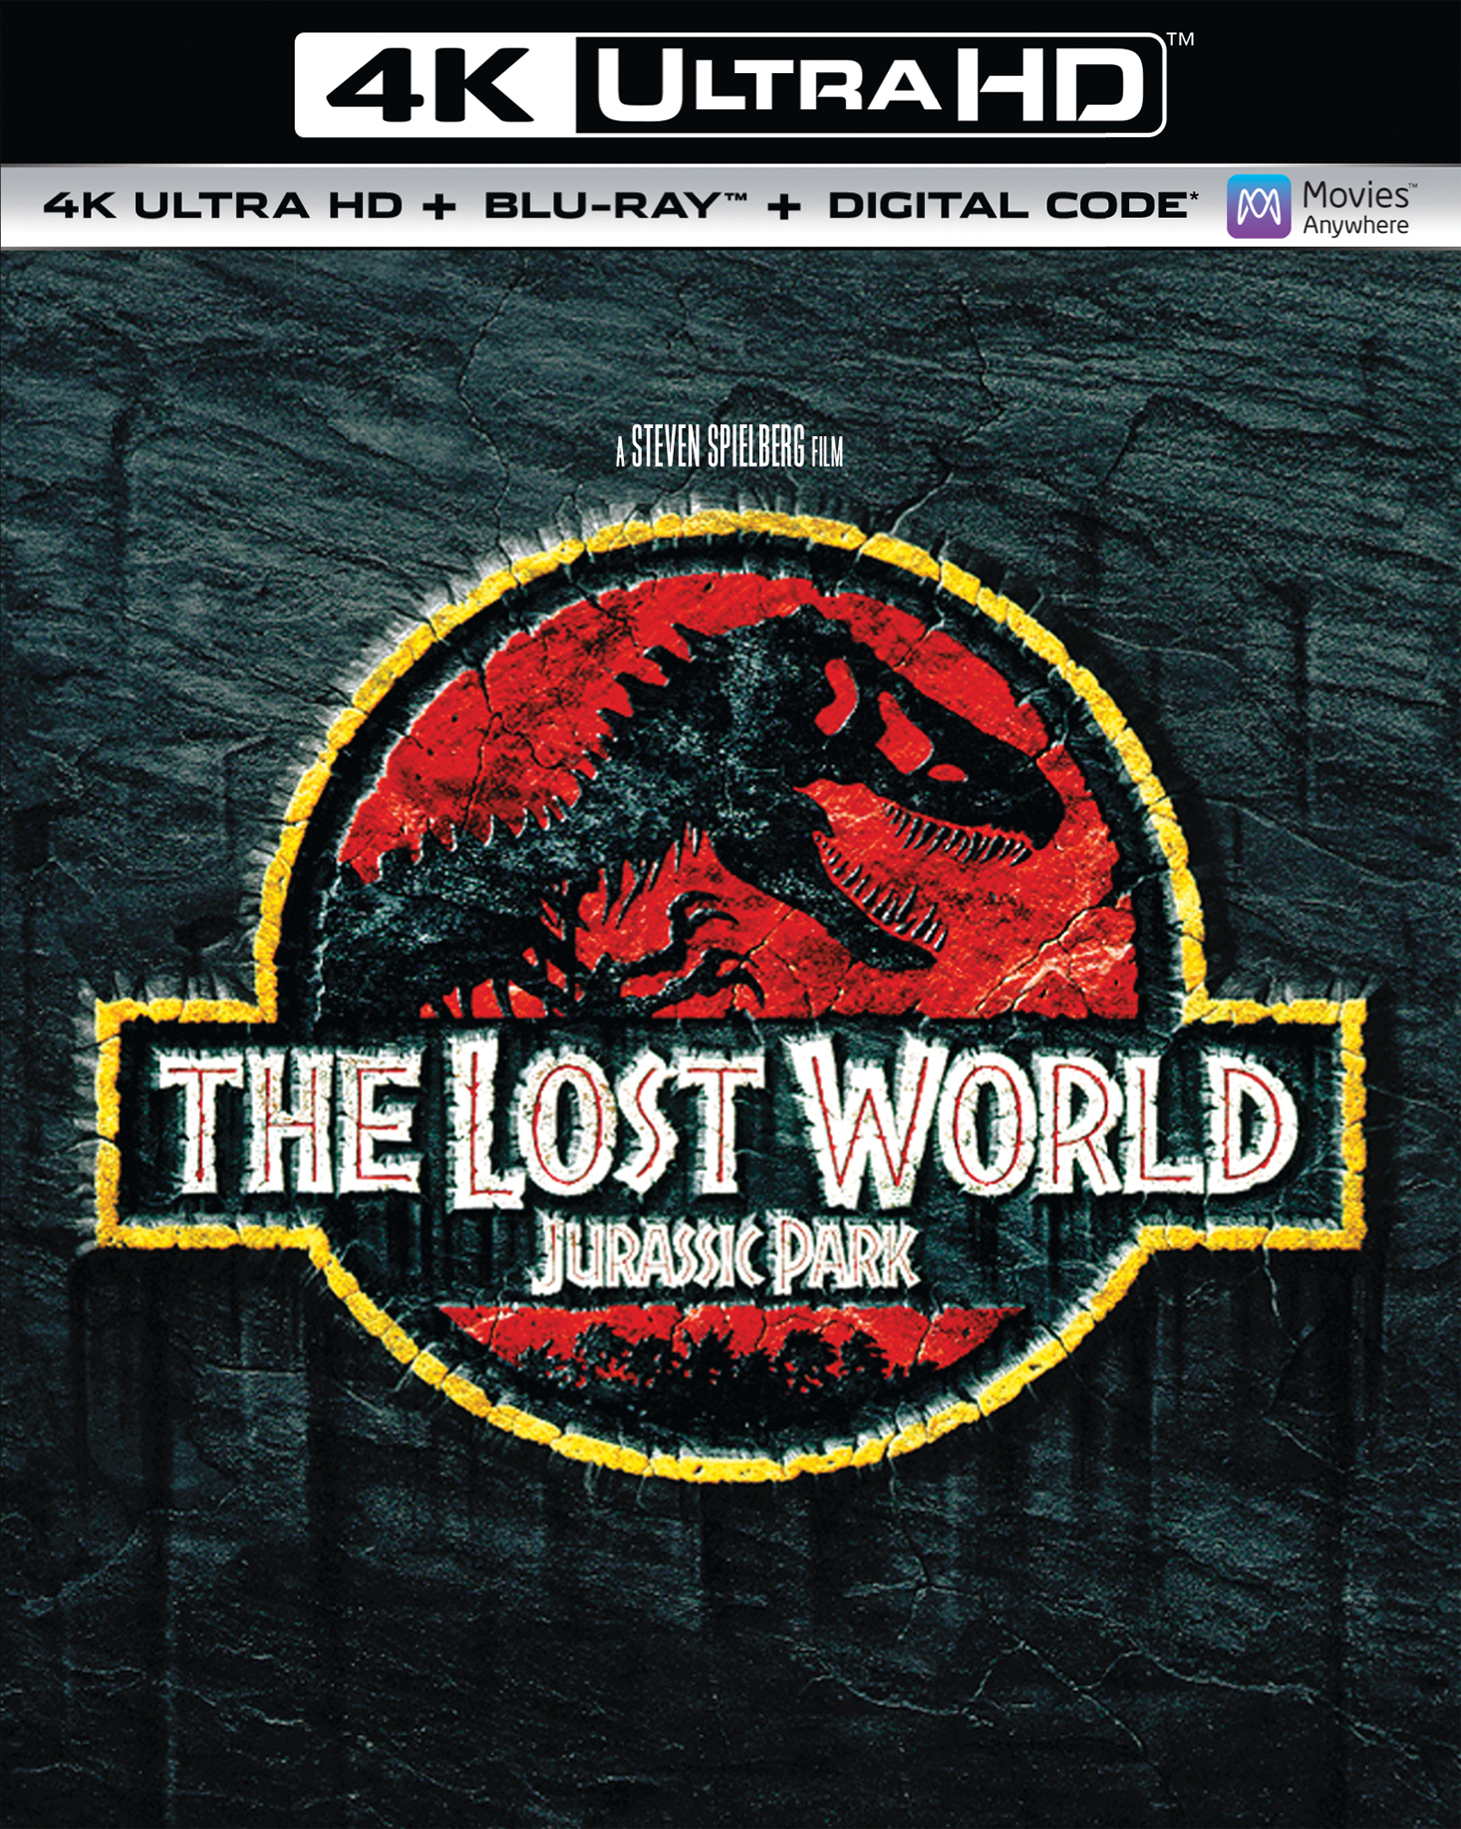 Jurassic Park et Jurassic World en 4K